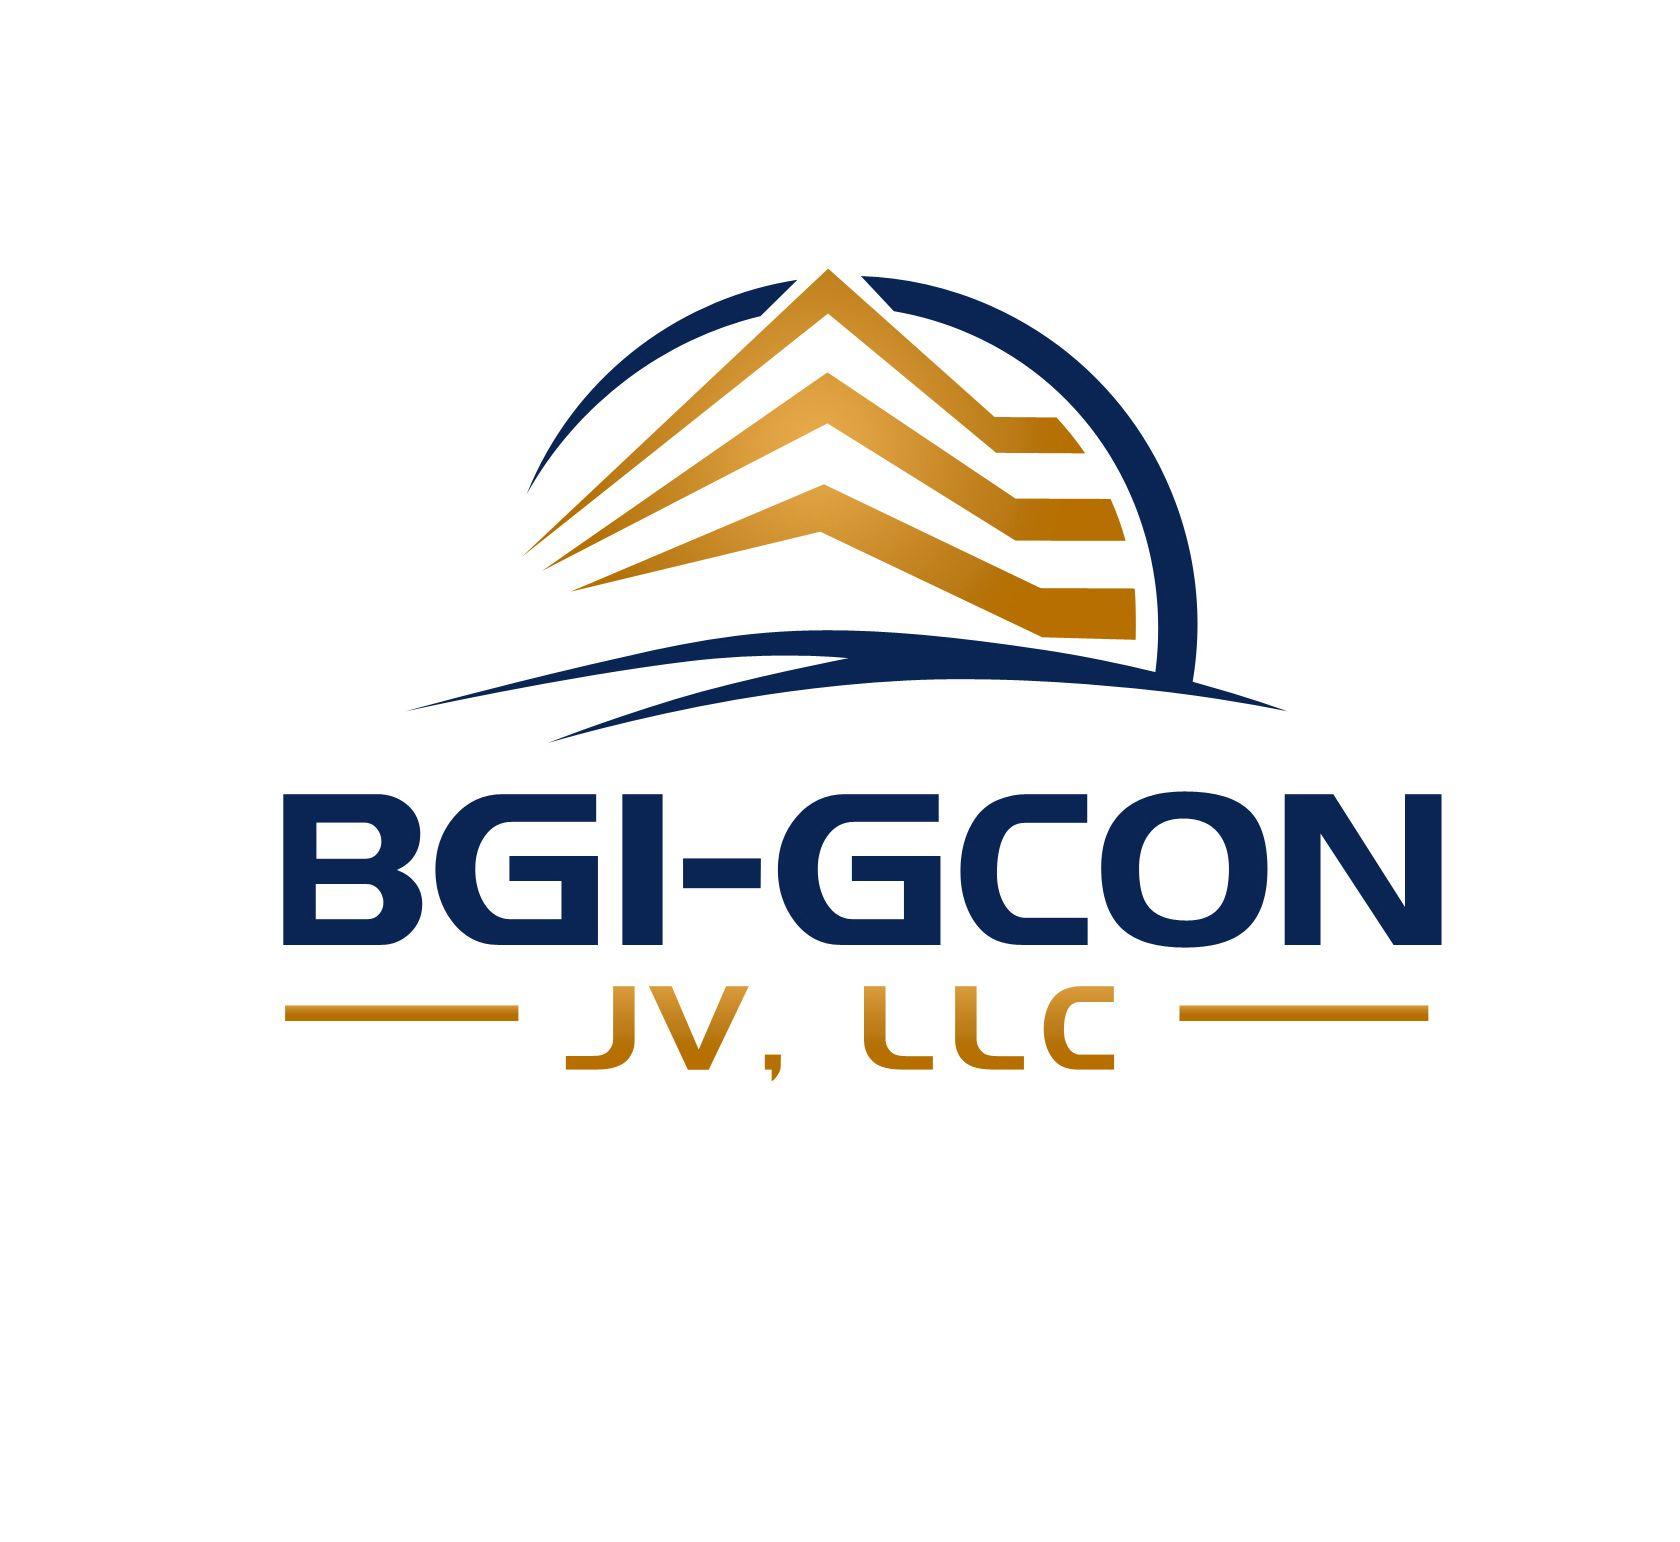 Gcon Logo - Construction Services Group International